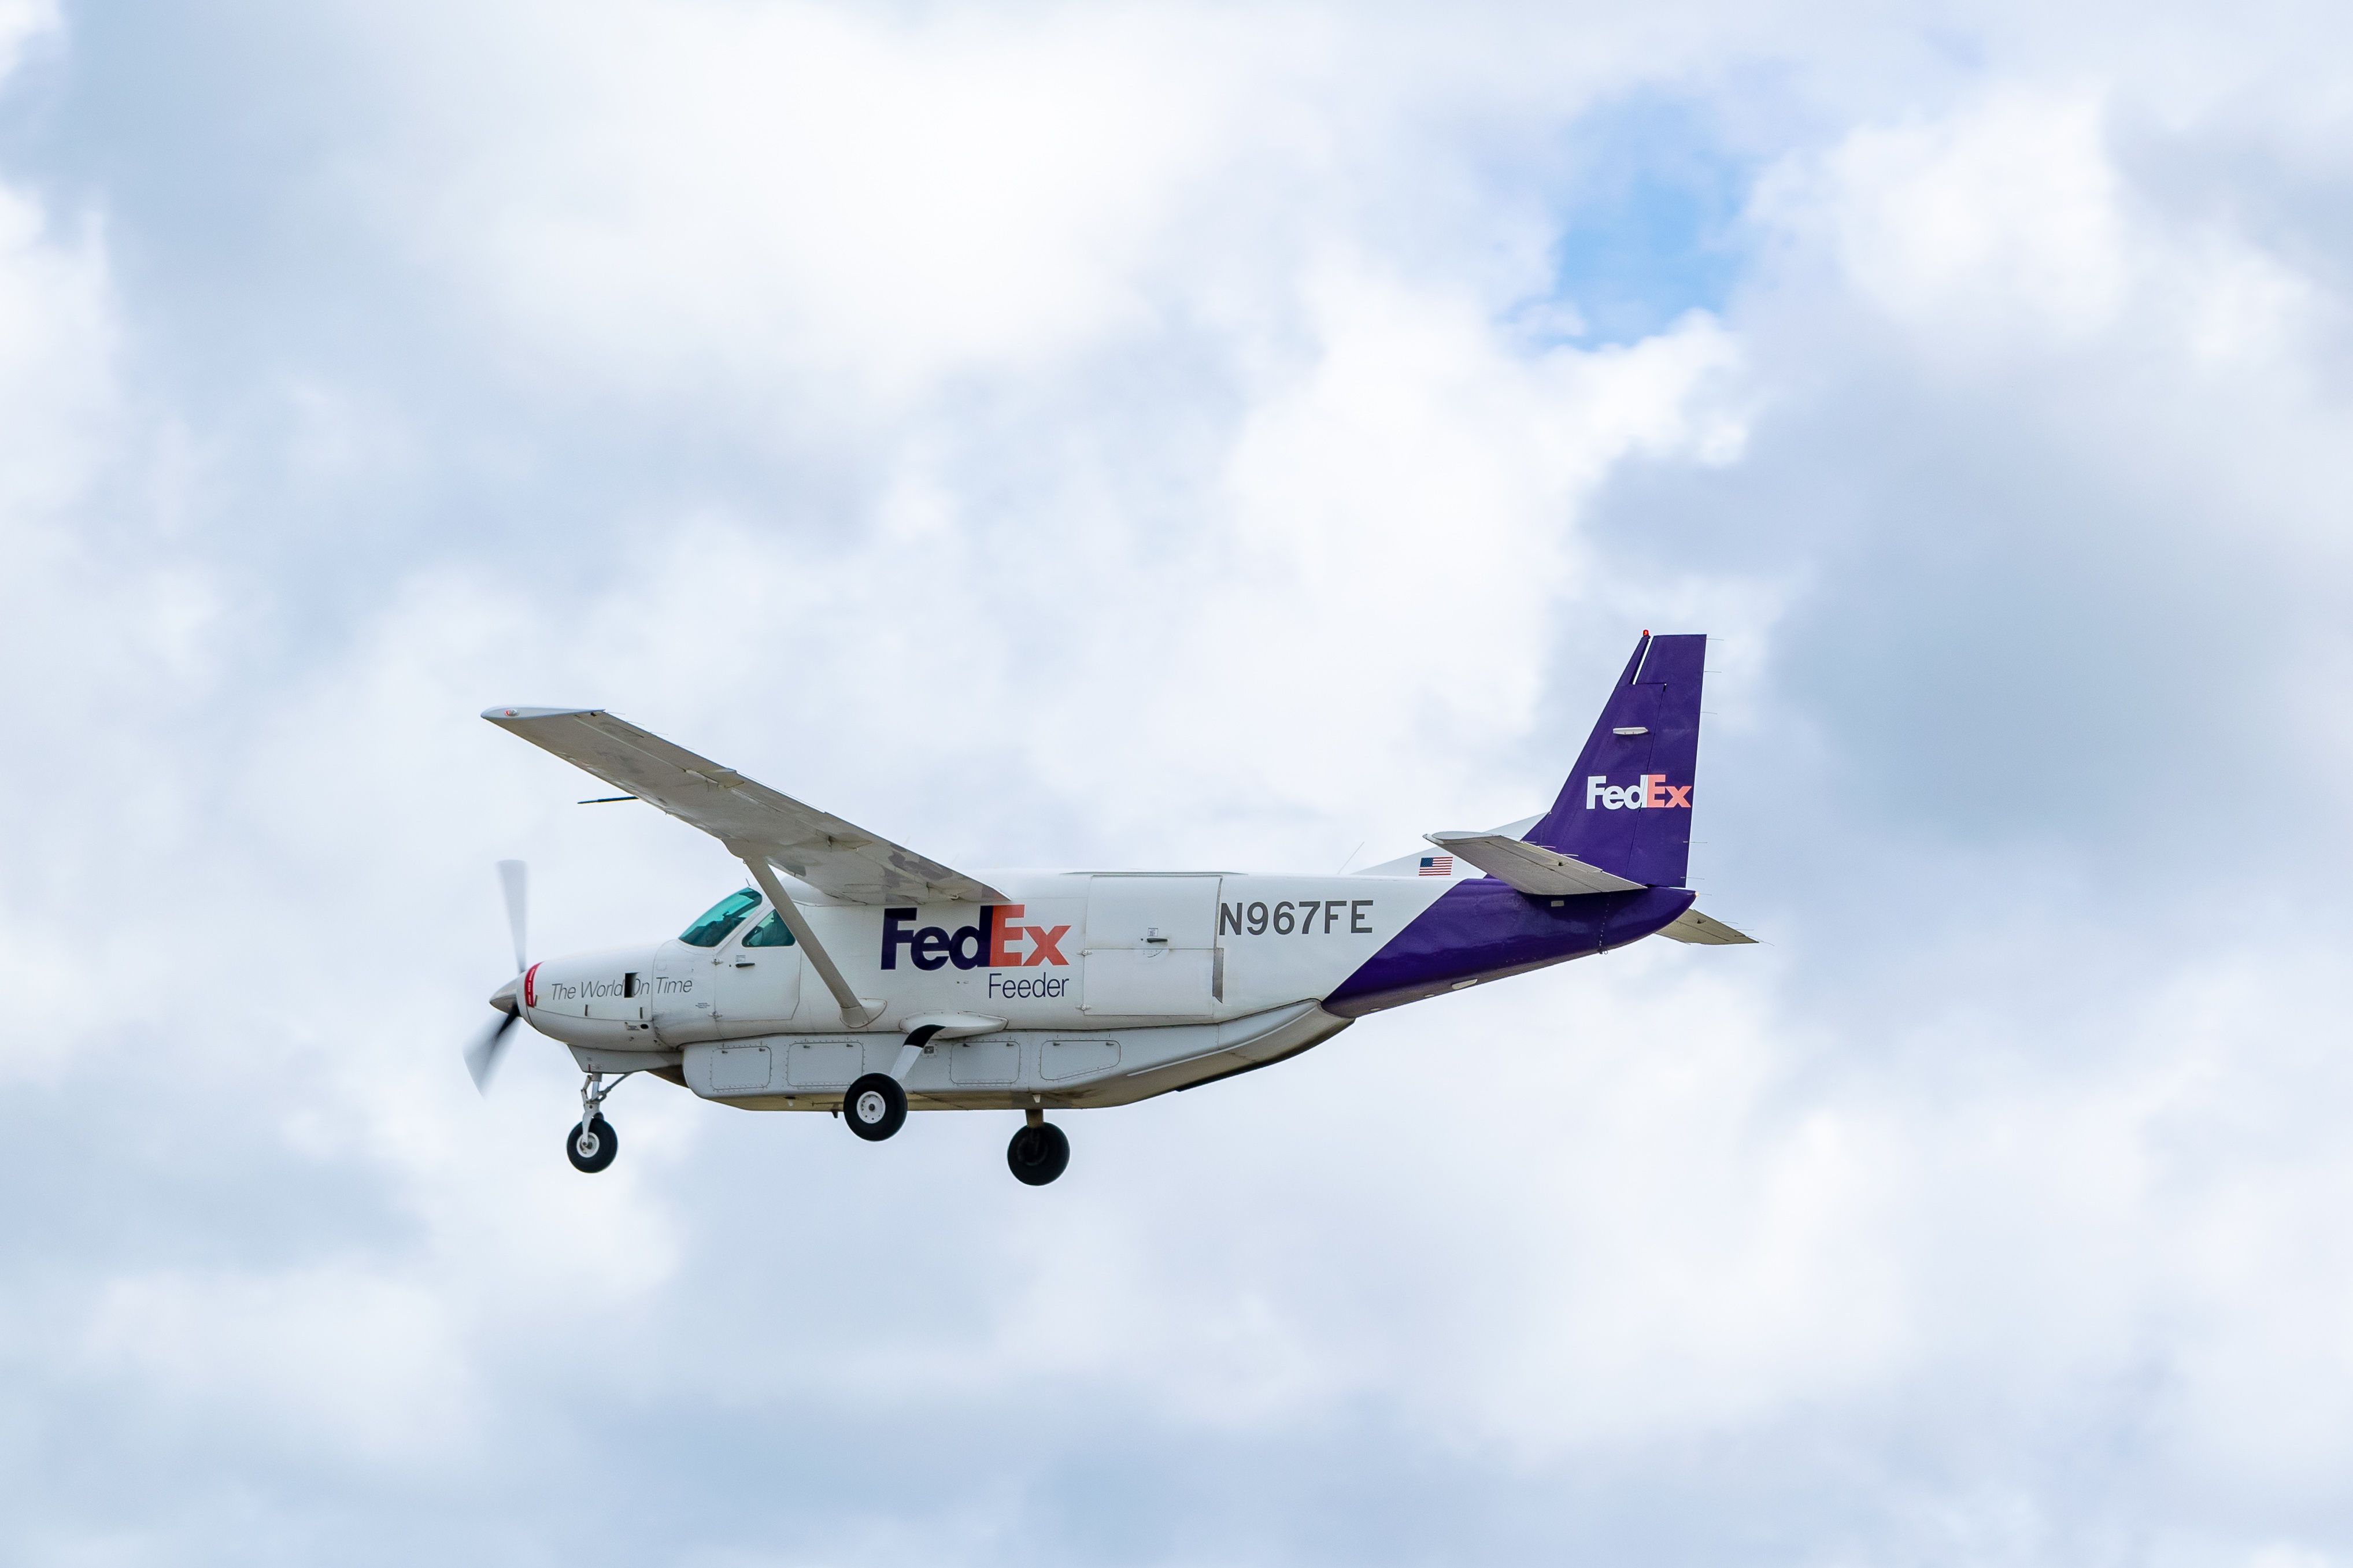 FedEx Feeder aircraft, a Cessna 208B Super Cargomaster N967FE